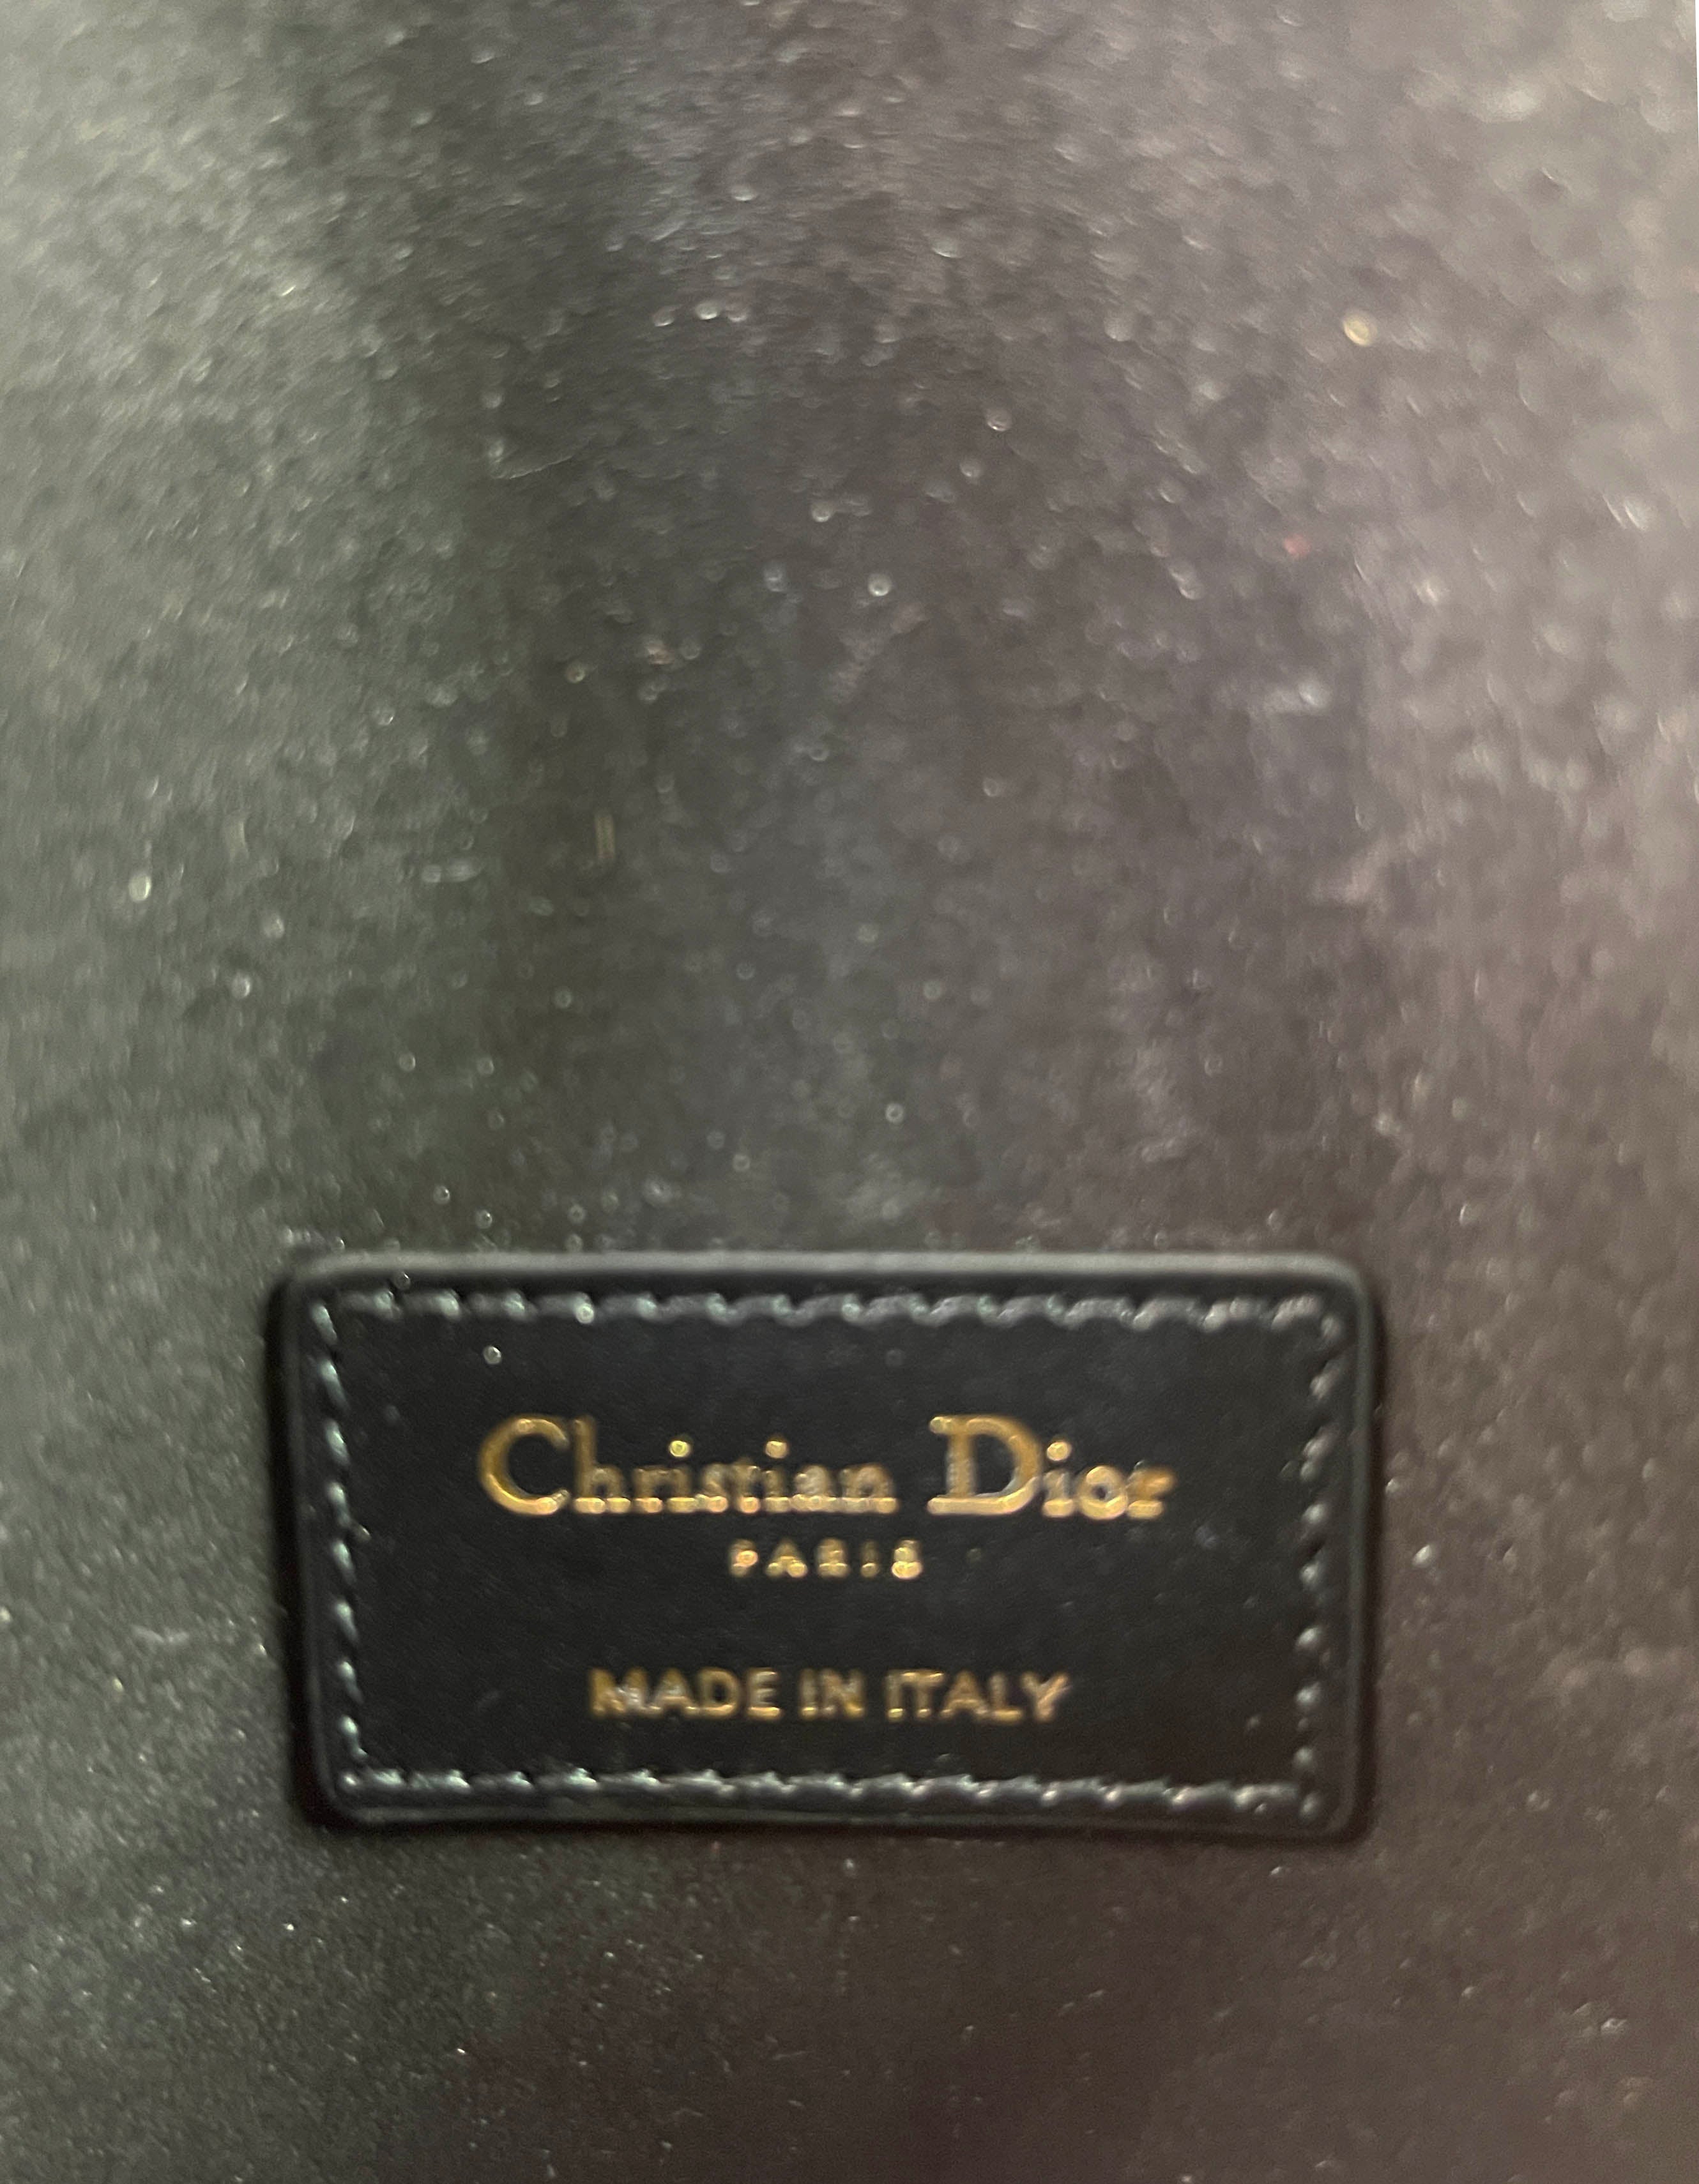 Christian Dior Black Leather Saddle Pouch Belt Bag